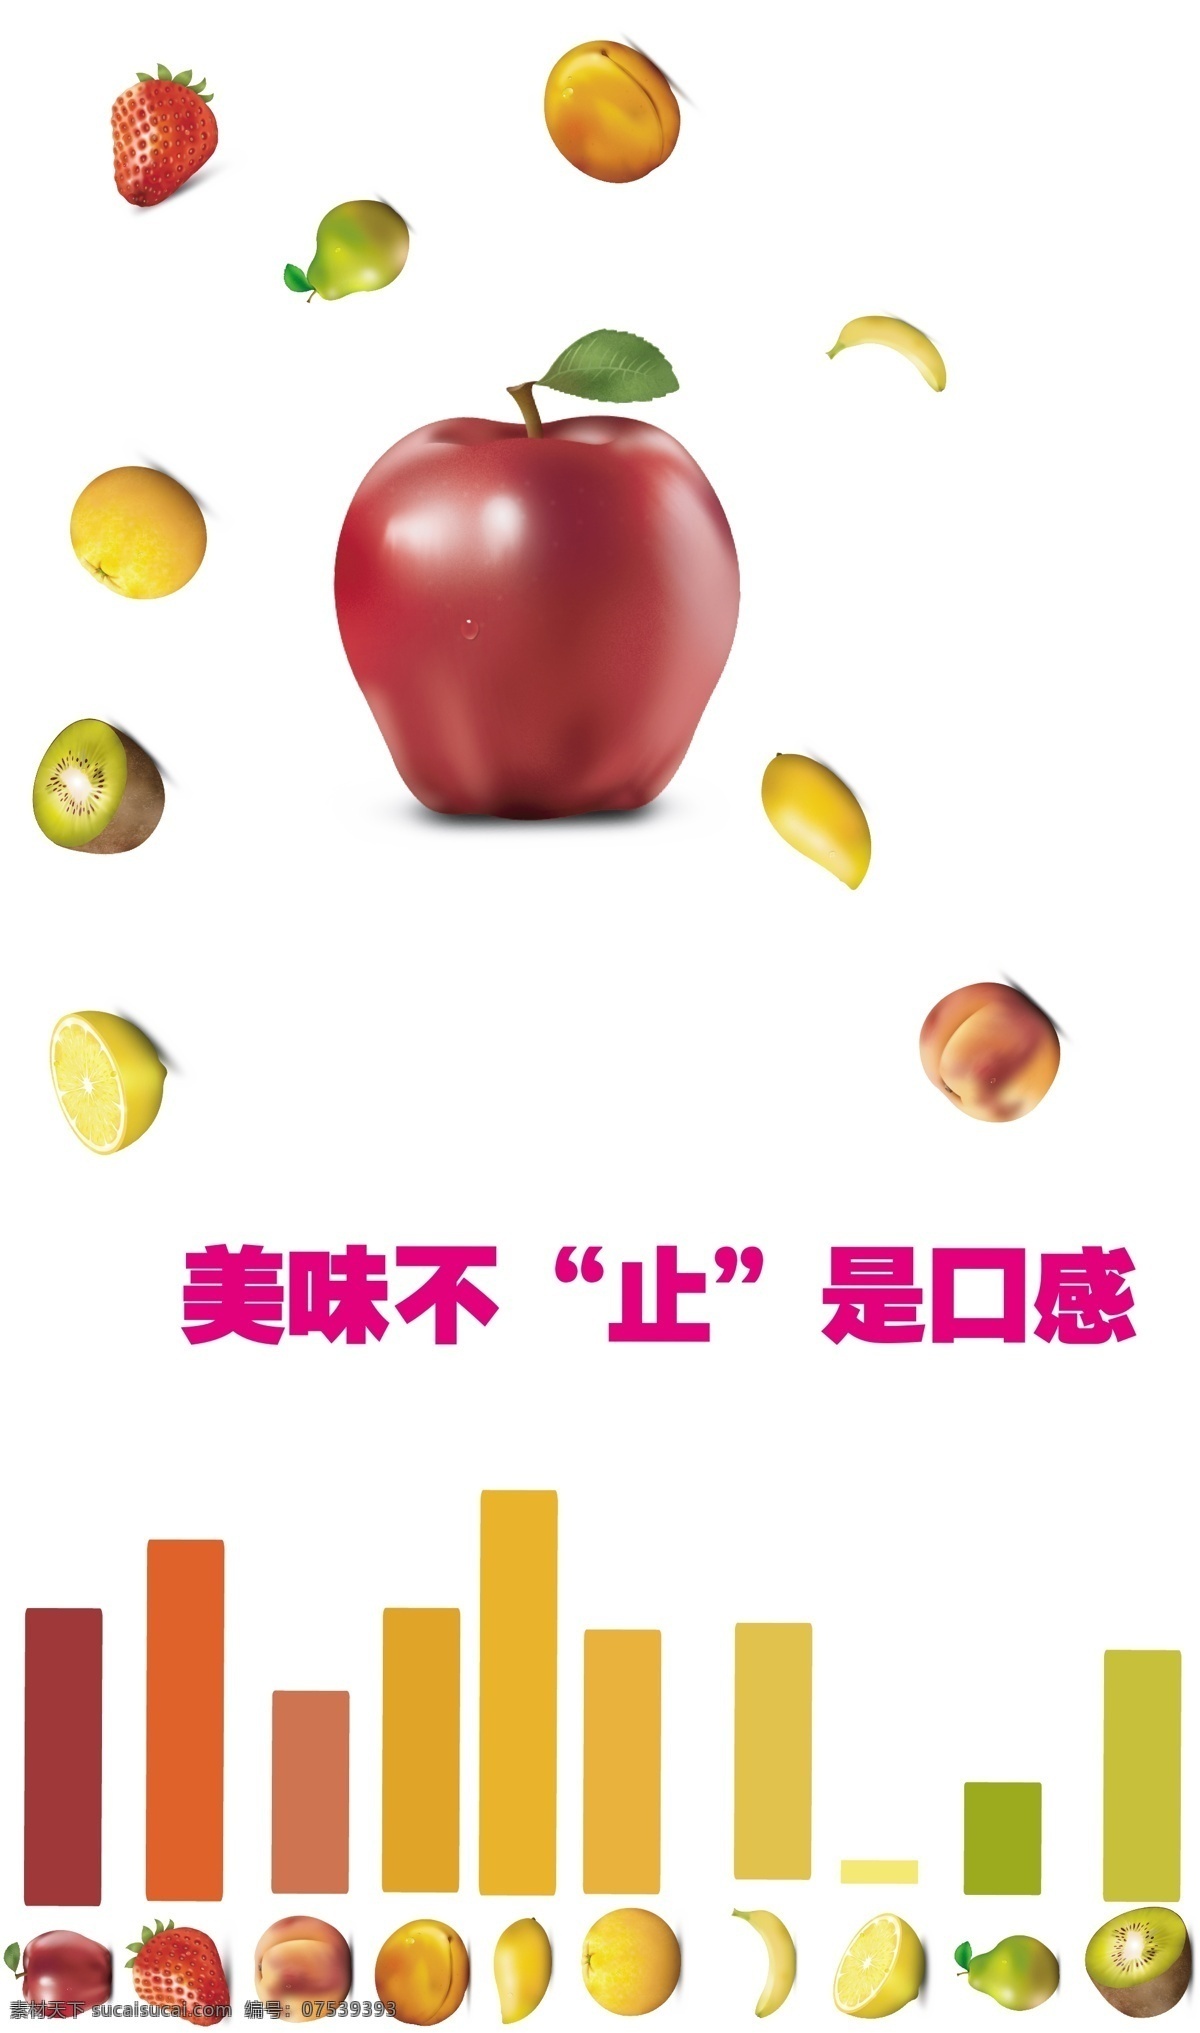 多彩 精致 流行 苹果 色彩 生活 时尚 水果 促销 矢量 模板下载 水果促销 艳丽 简捷 艺术